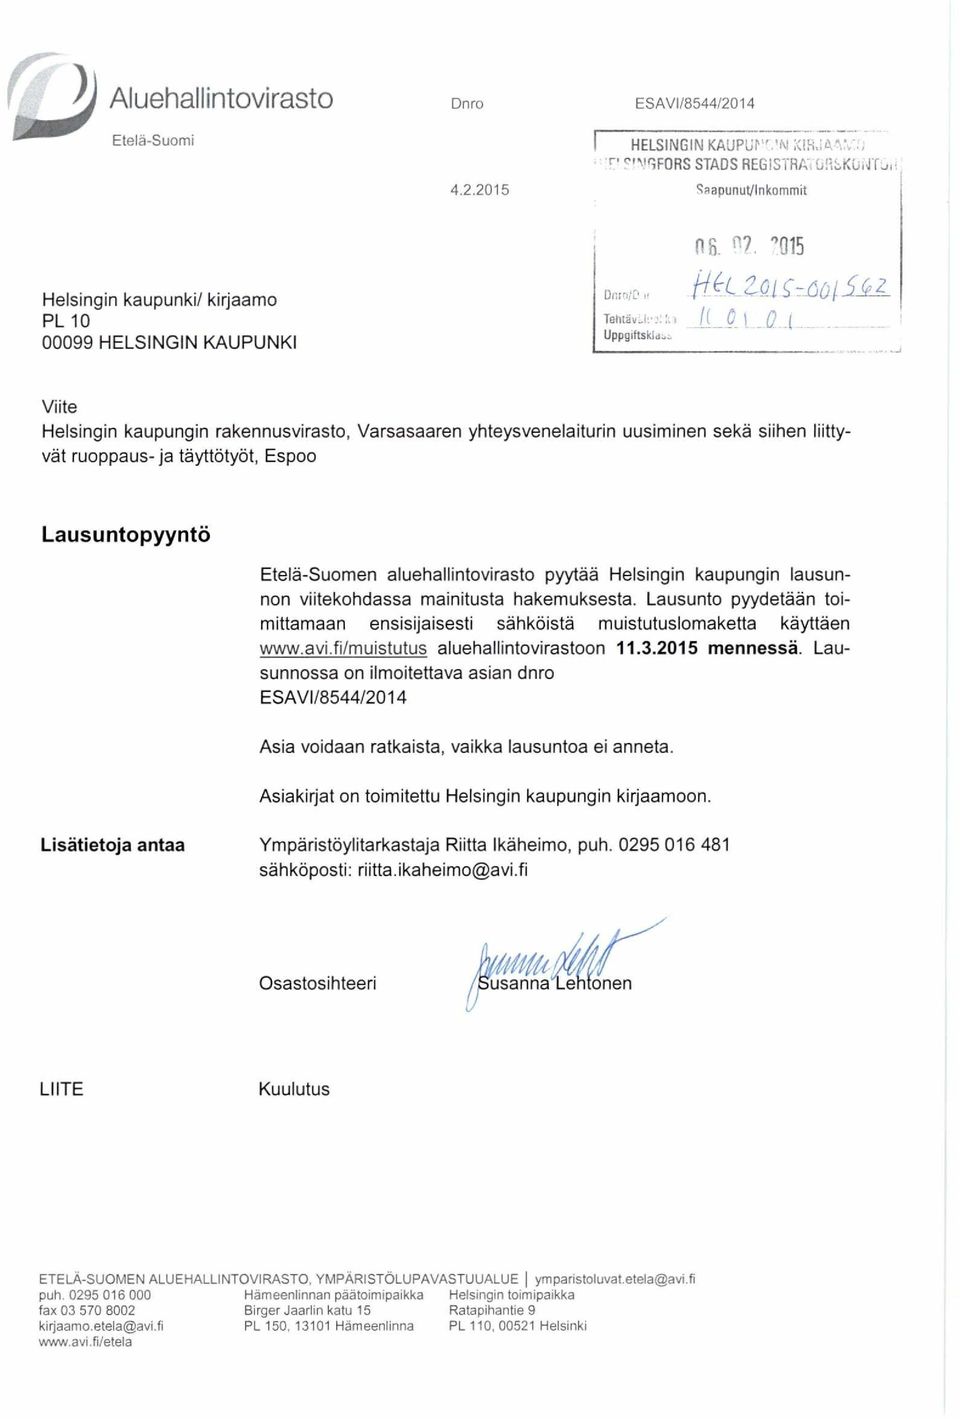 aluehallintovirasto pyytää Helsingin kaupungin lausunnon viitekohdassa mainitusta hakemuksesta. Lausunto pyydetään toimittamaan ensisijaisesti sähköistä muistutuslomaketta käyttäen www.avi.